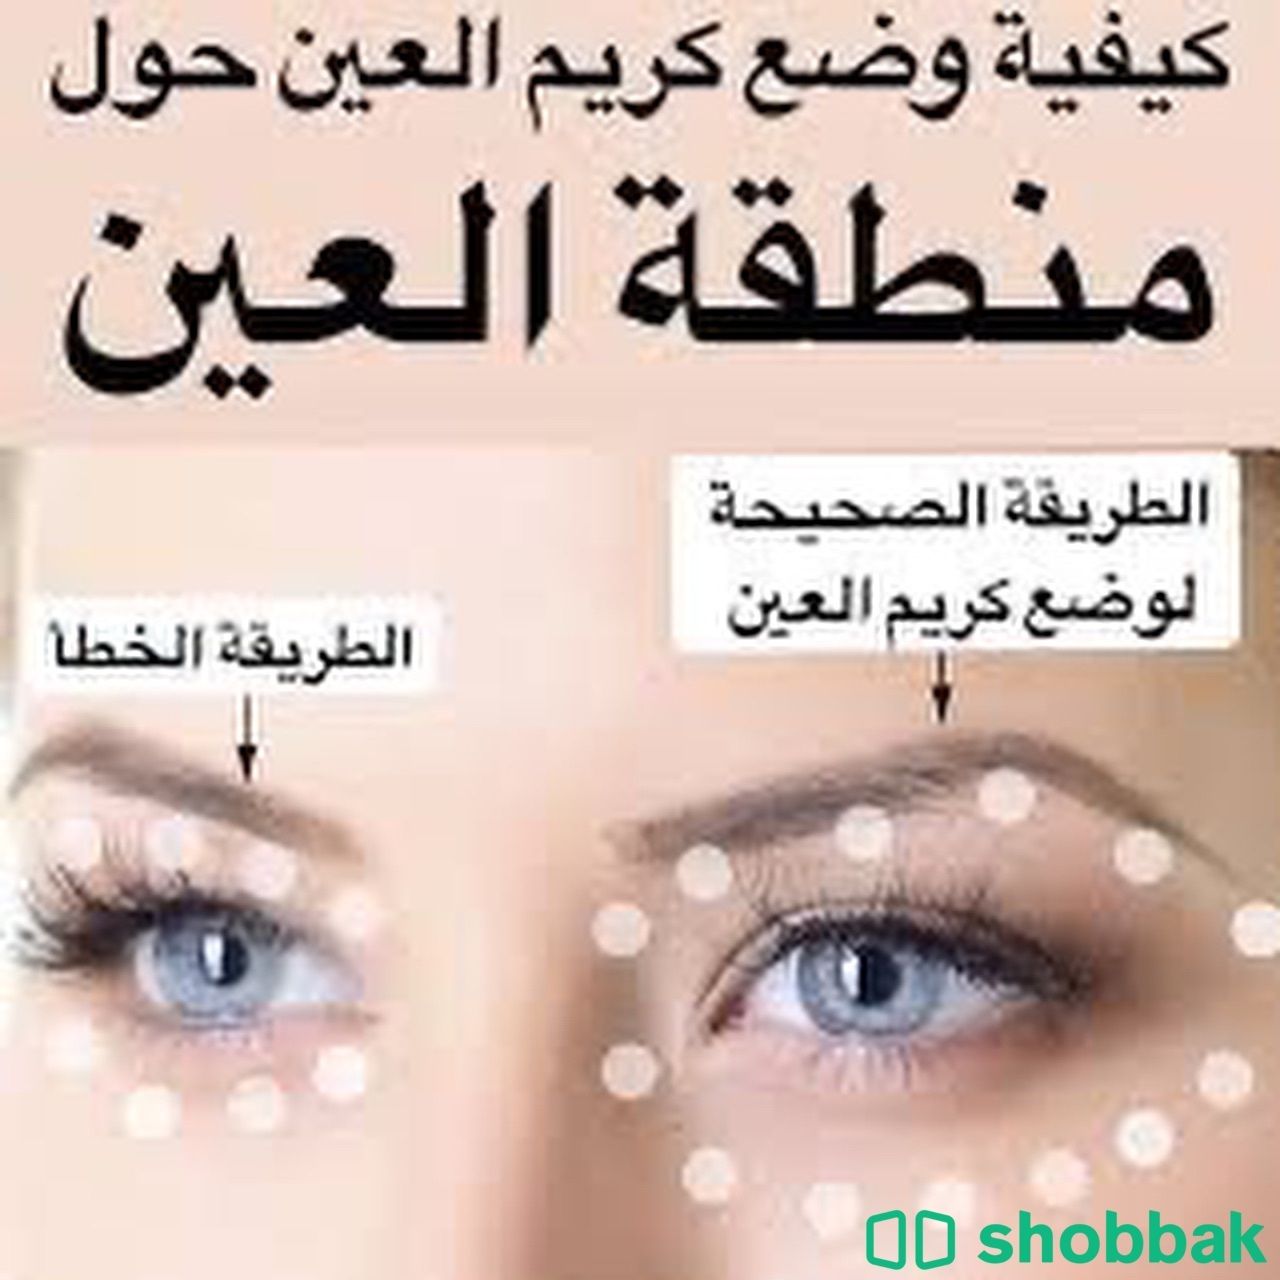 كريم العيون اويكننج كريم  Shobbak Saudi Arabia